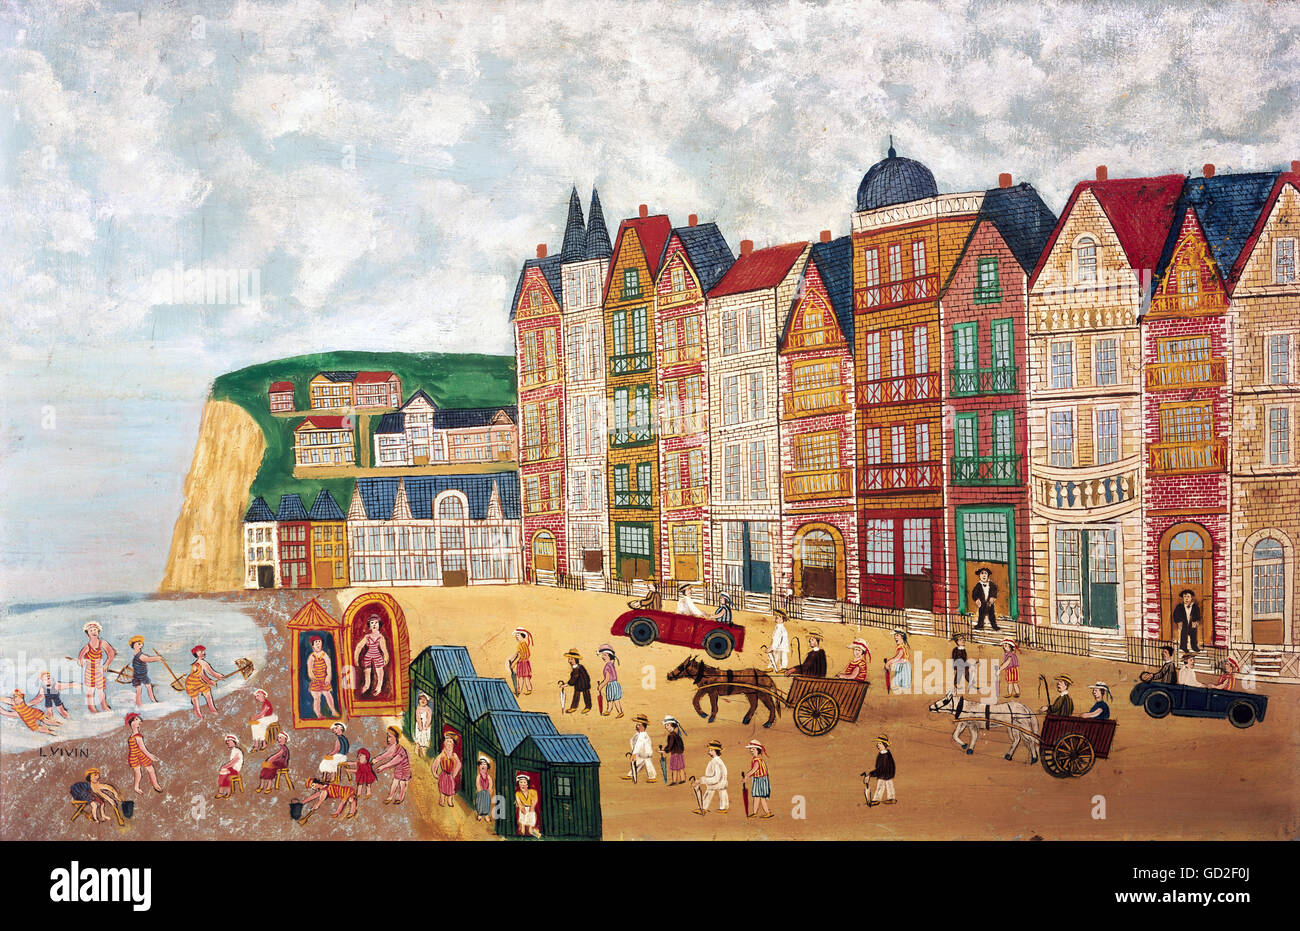 Arte, Viven, Louis (1861 - 1936), pittura, "spiaggia", olio su tela, collezione privata, artista del diritto d'autore non deve essere cancellata Foto Stock